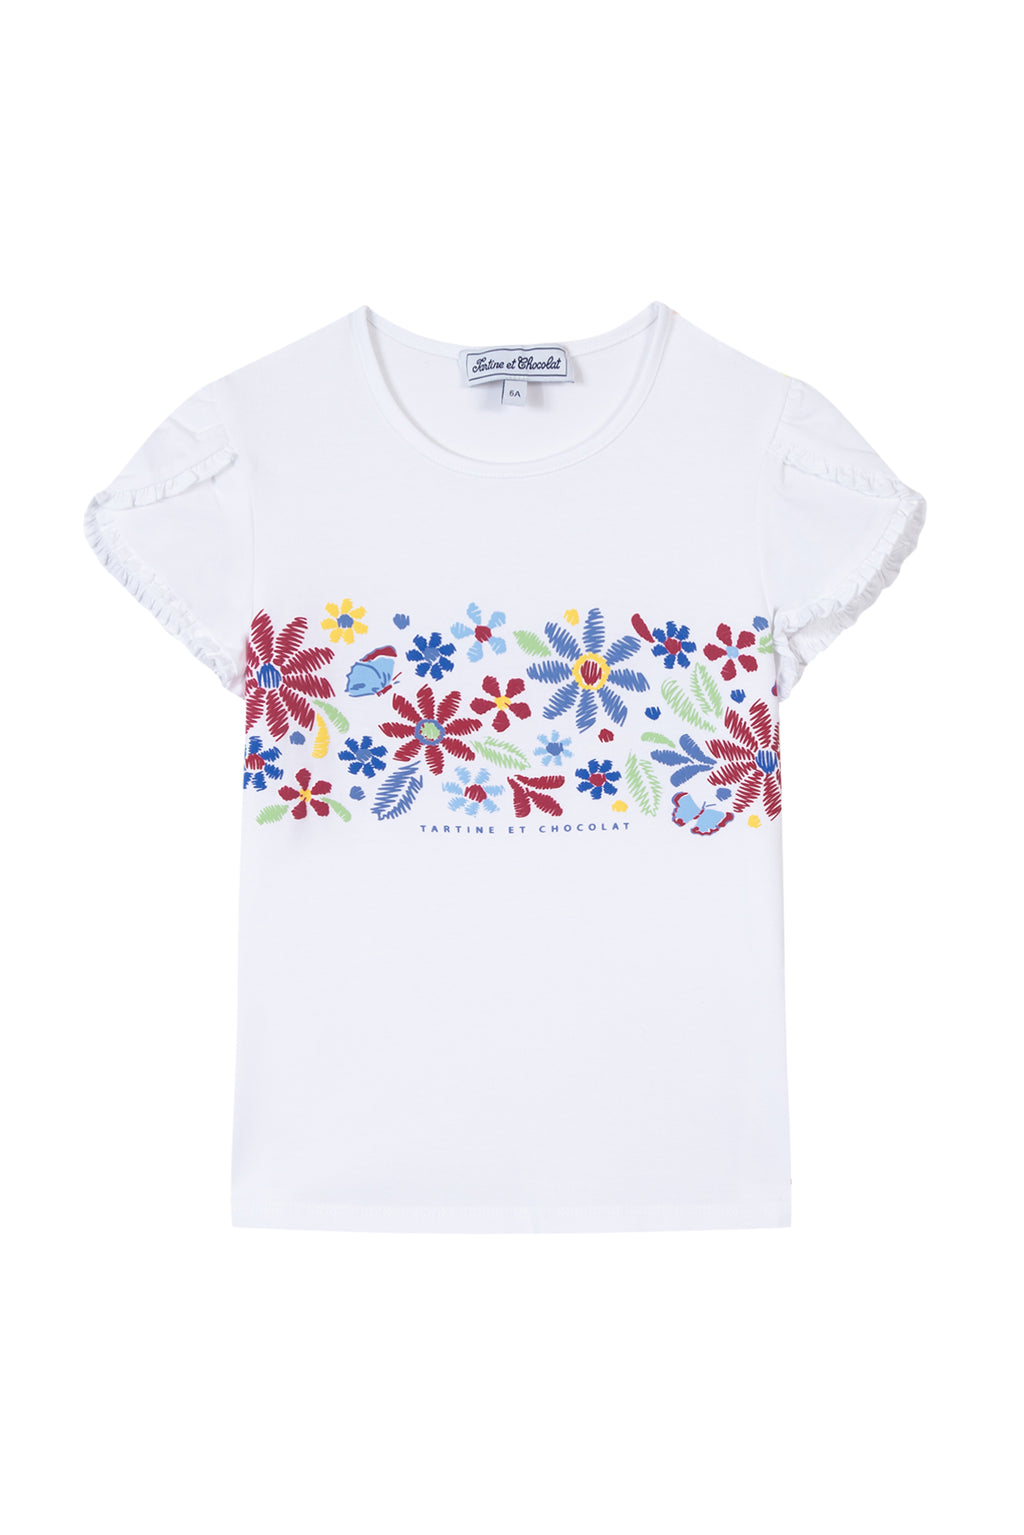 T -Shirt - Bougainvillier Illustrazione fiore